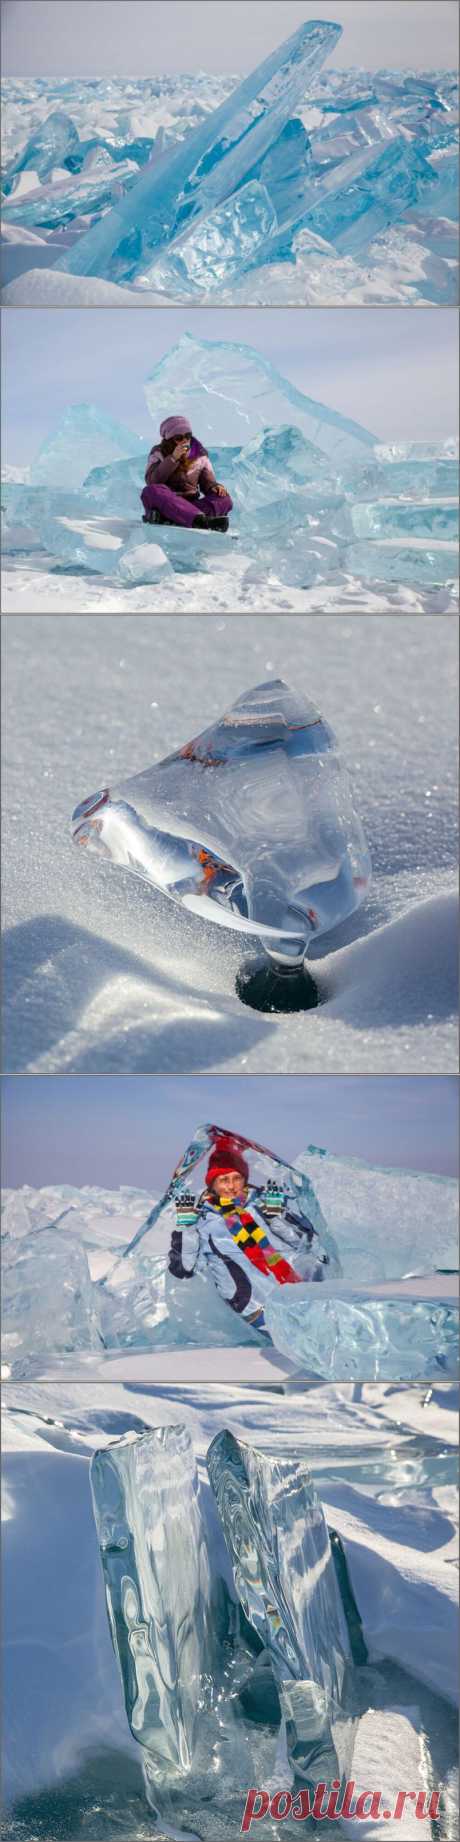 Кристально чистые льды Байкала. Прогулка по весеннему льду Байкала весьма интересное и увлекательное занятие. Глядя на ледяные просторы, гладкие как вода и красивые как весеннее небо начинаешь понимать, что попал в настоящую сказку.